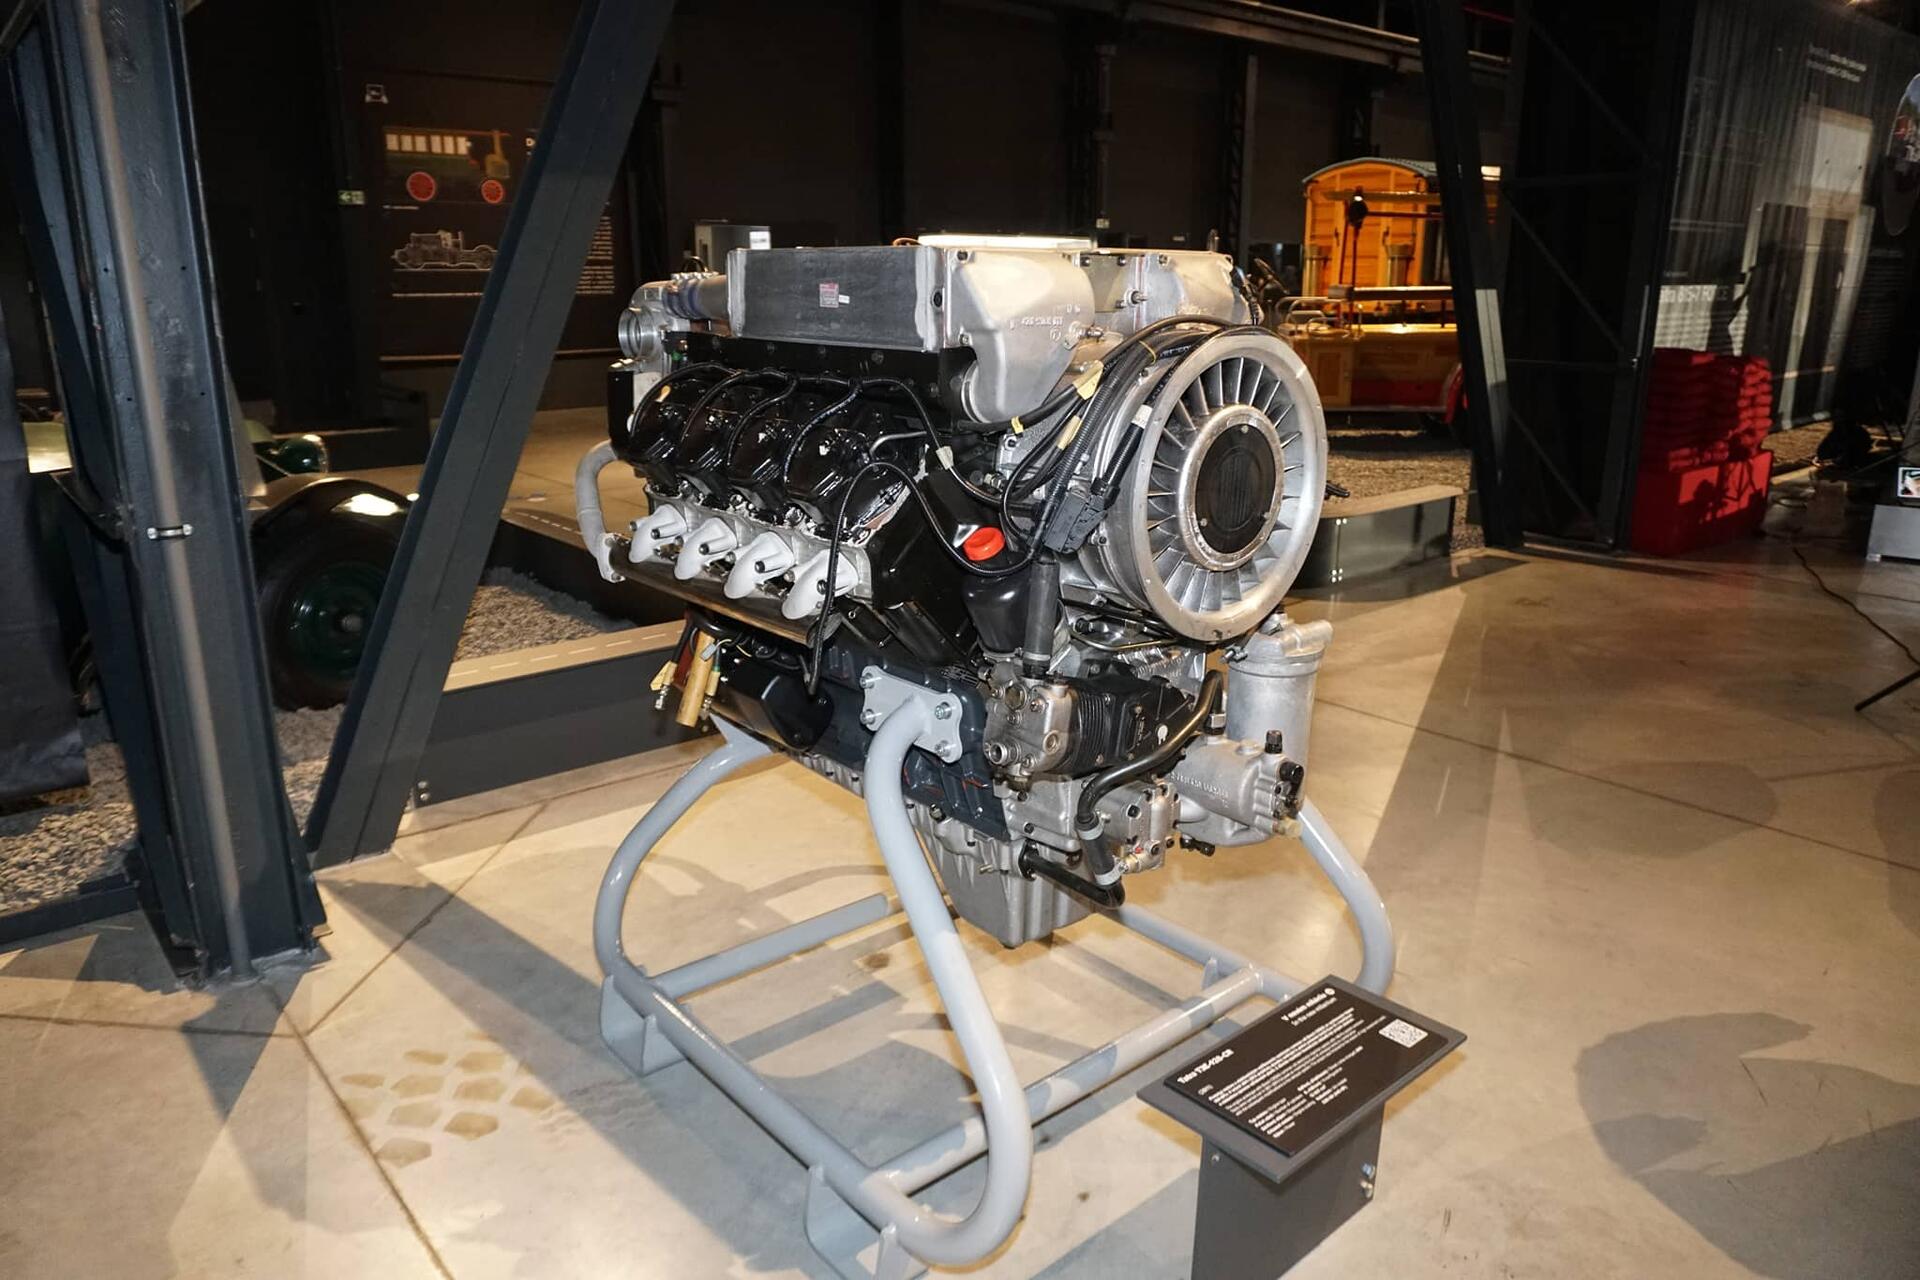 A tohle je unikát – Tatra připravila vzduchem chlazený agregát splňující Euro 6. Vývoj byl ale zastaven. Motor můžete vidět jen v muzeu.